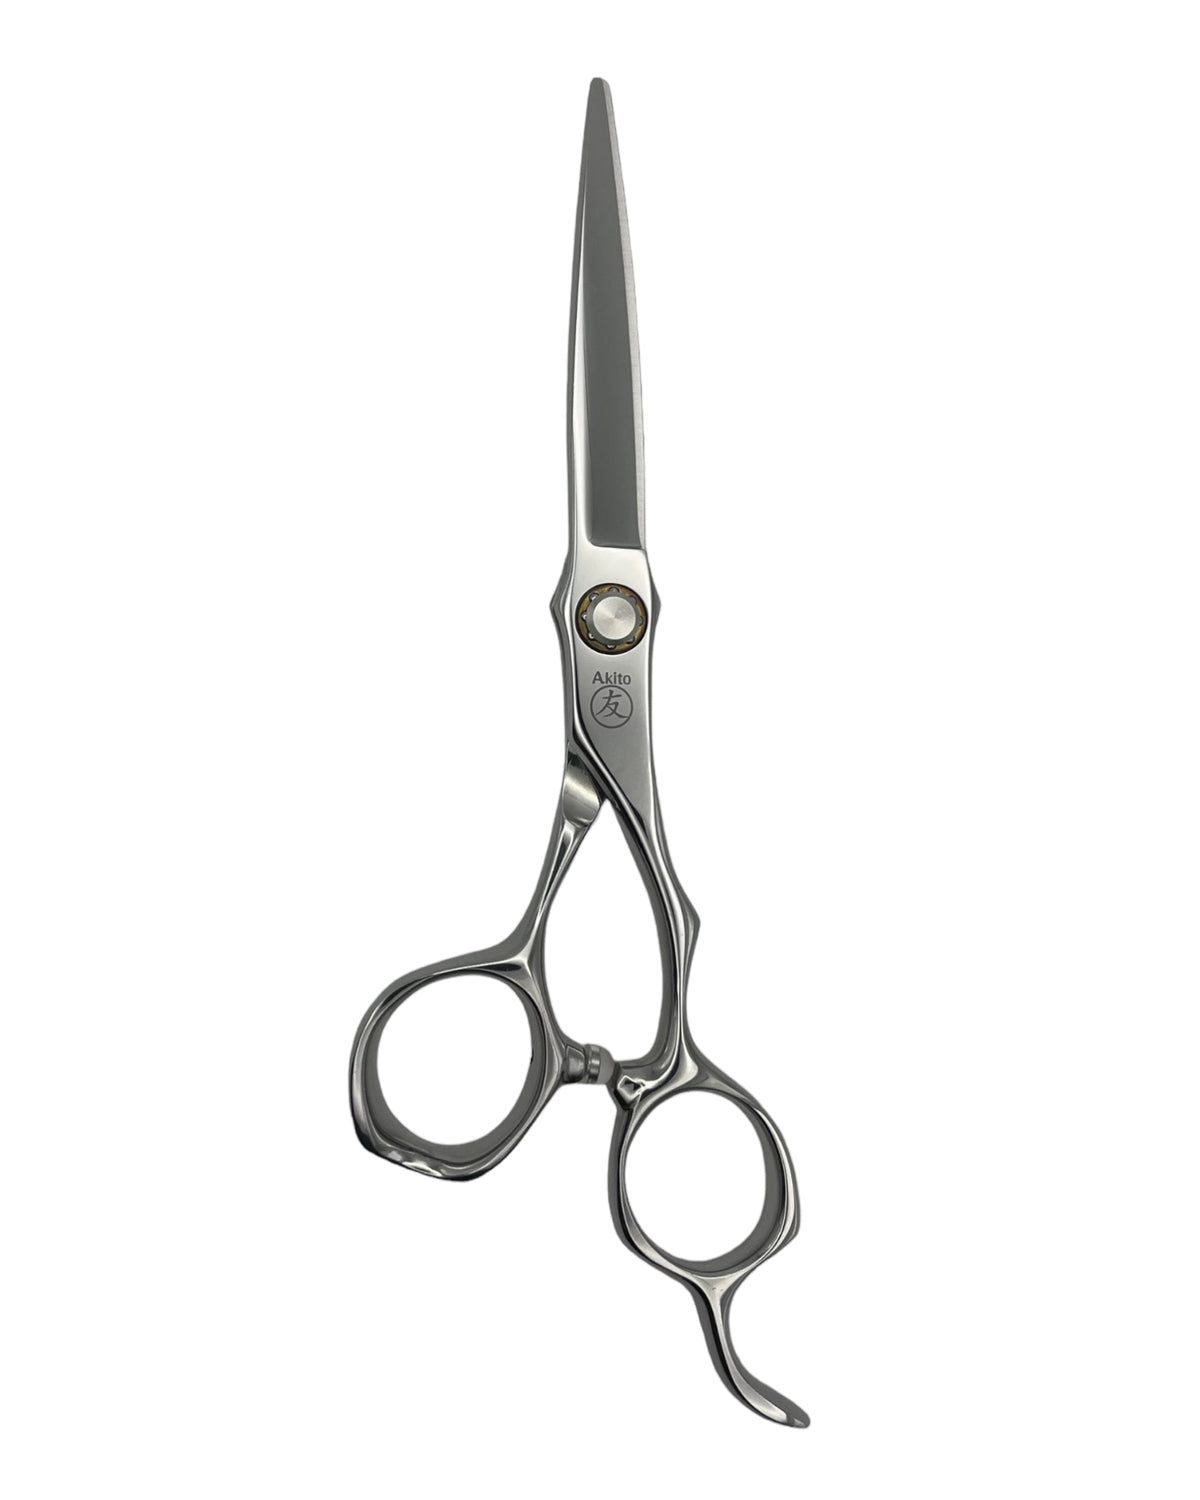 Kasai X Hair Cutting Scissors